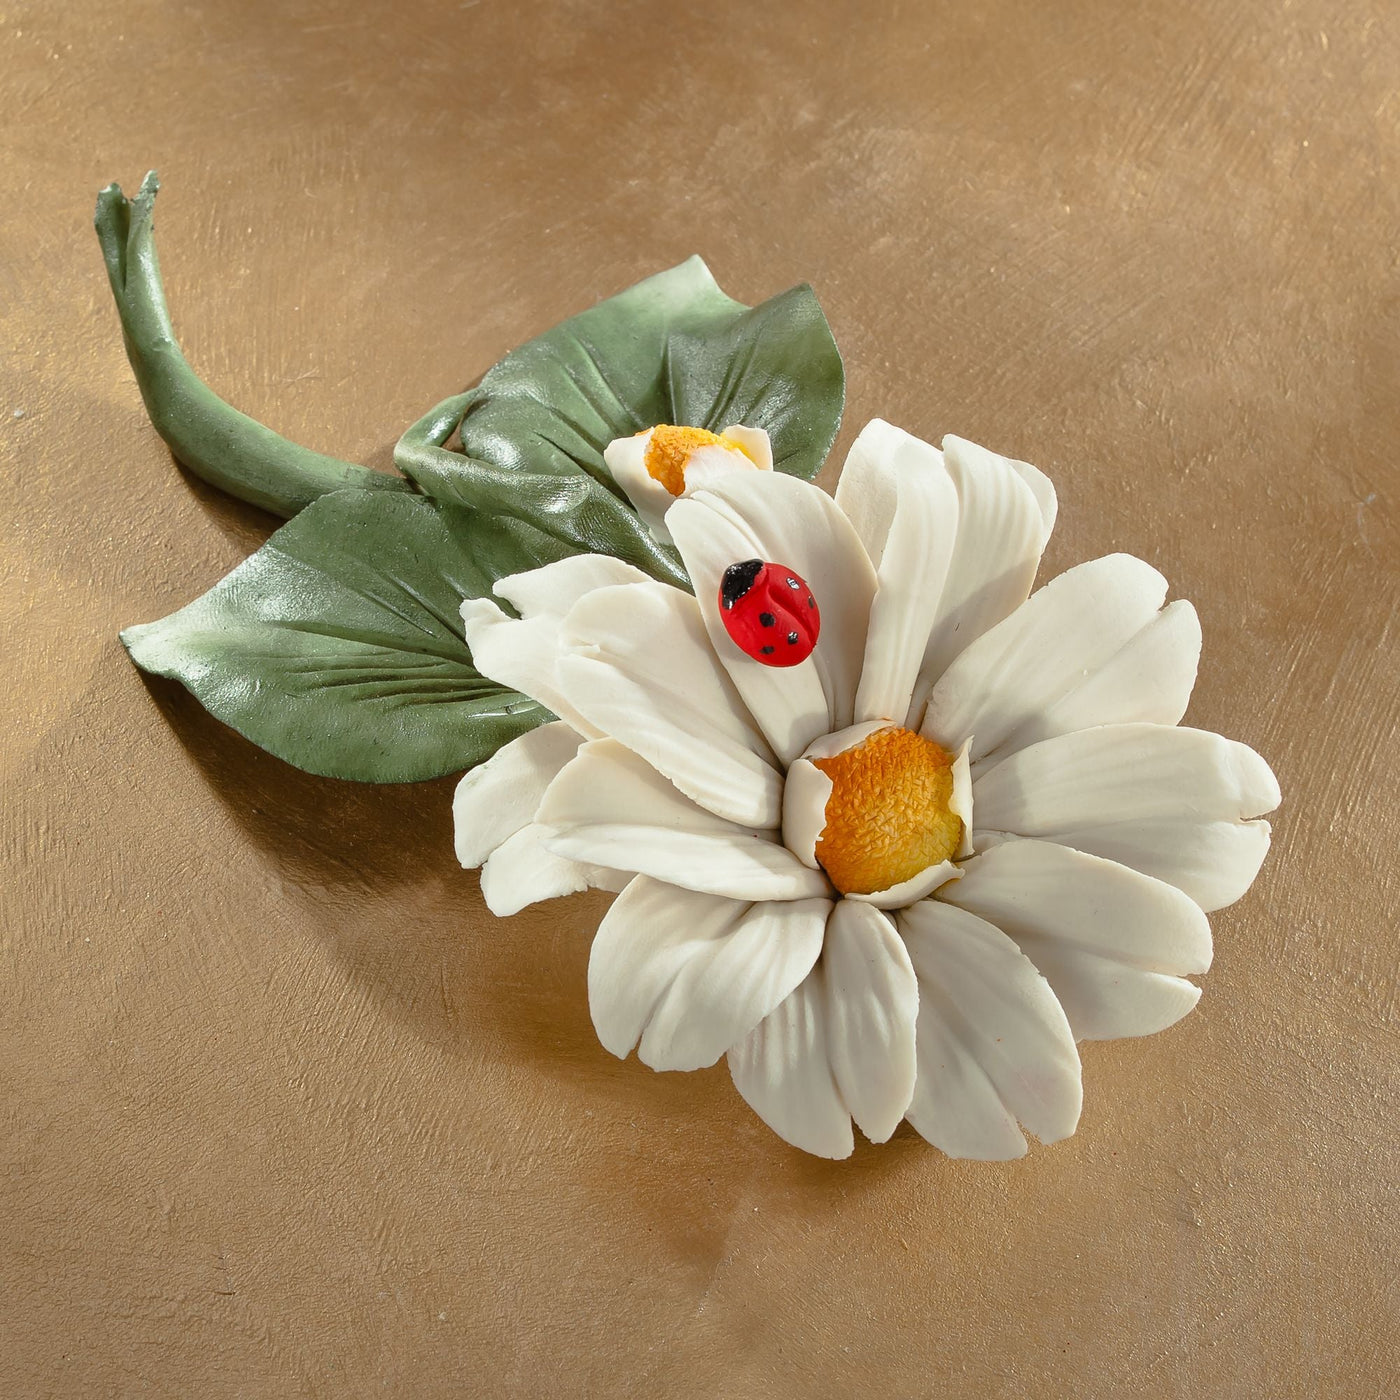 Capodimonte Porcelain White Daisy With Ladybug